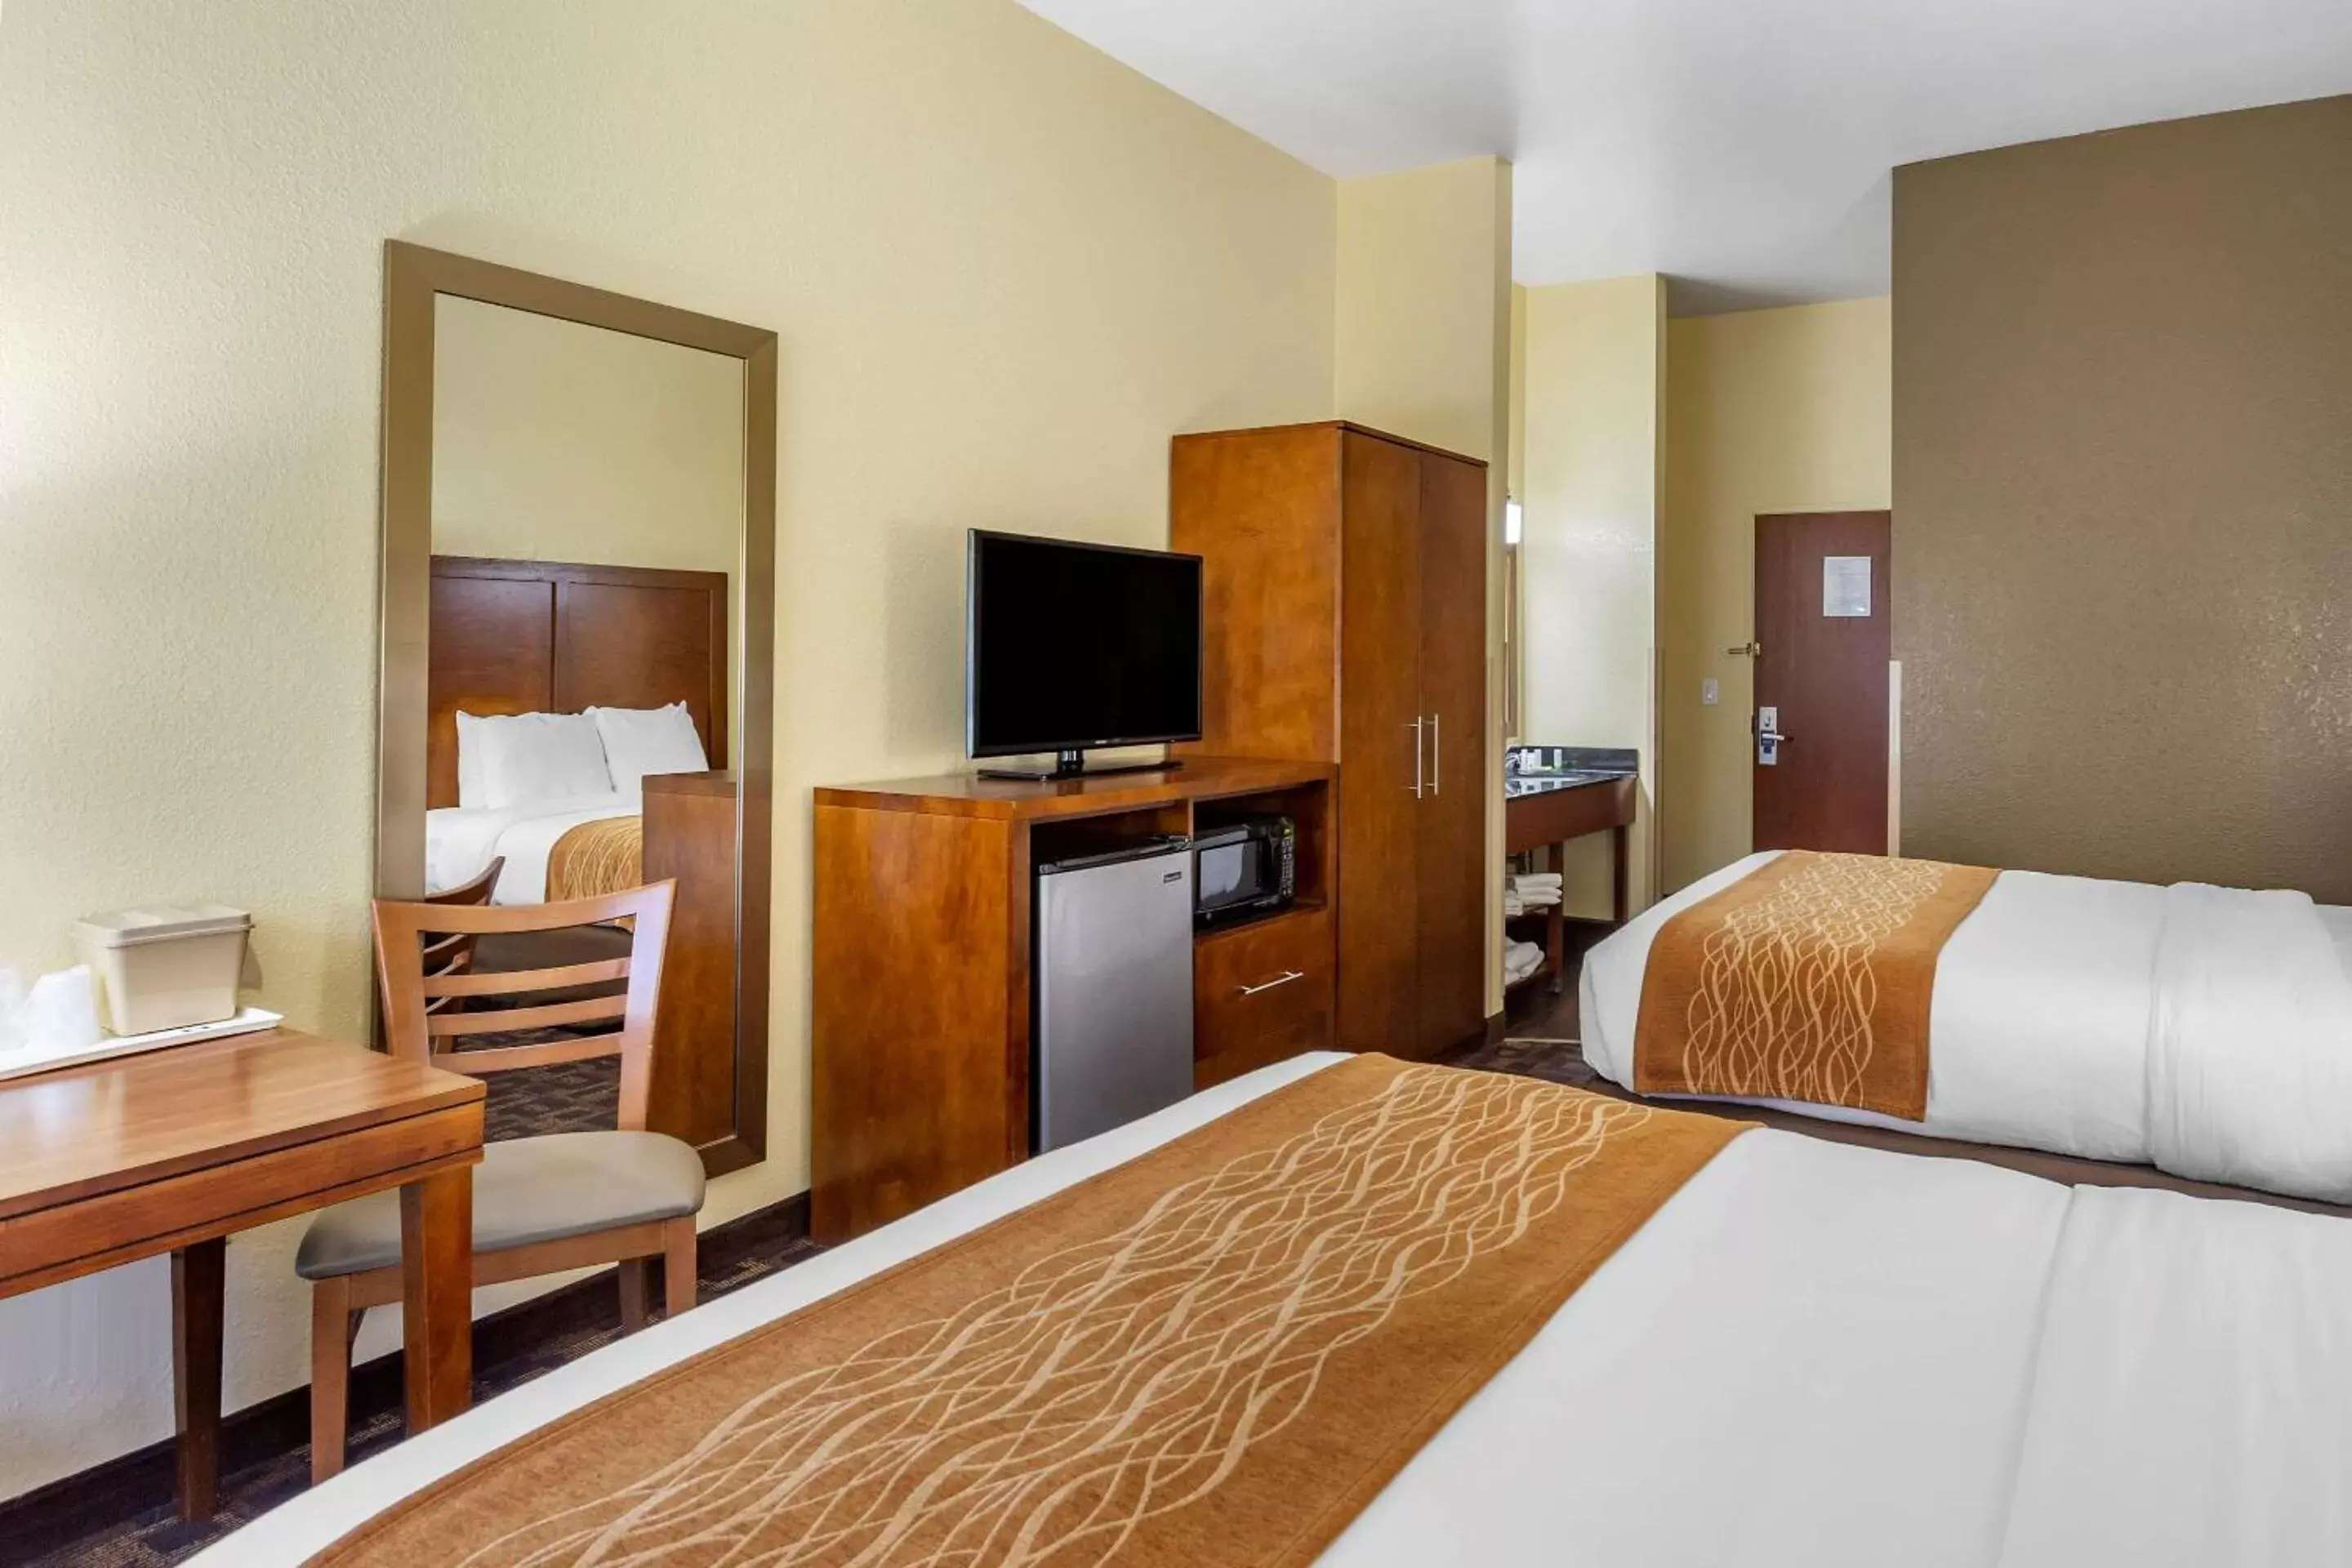 Bedroom, Bed in Comfort Inn & Suites North Aurora - Naperville